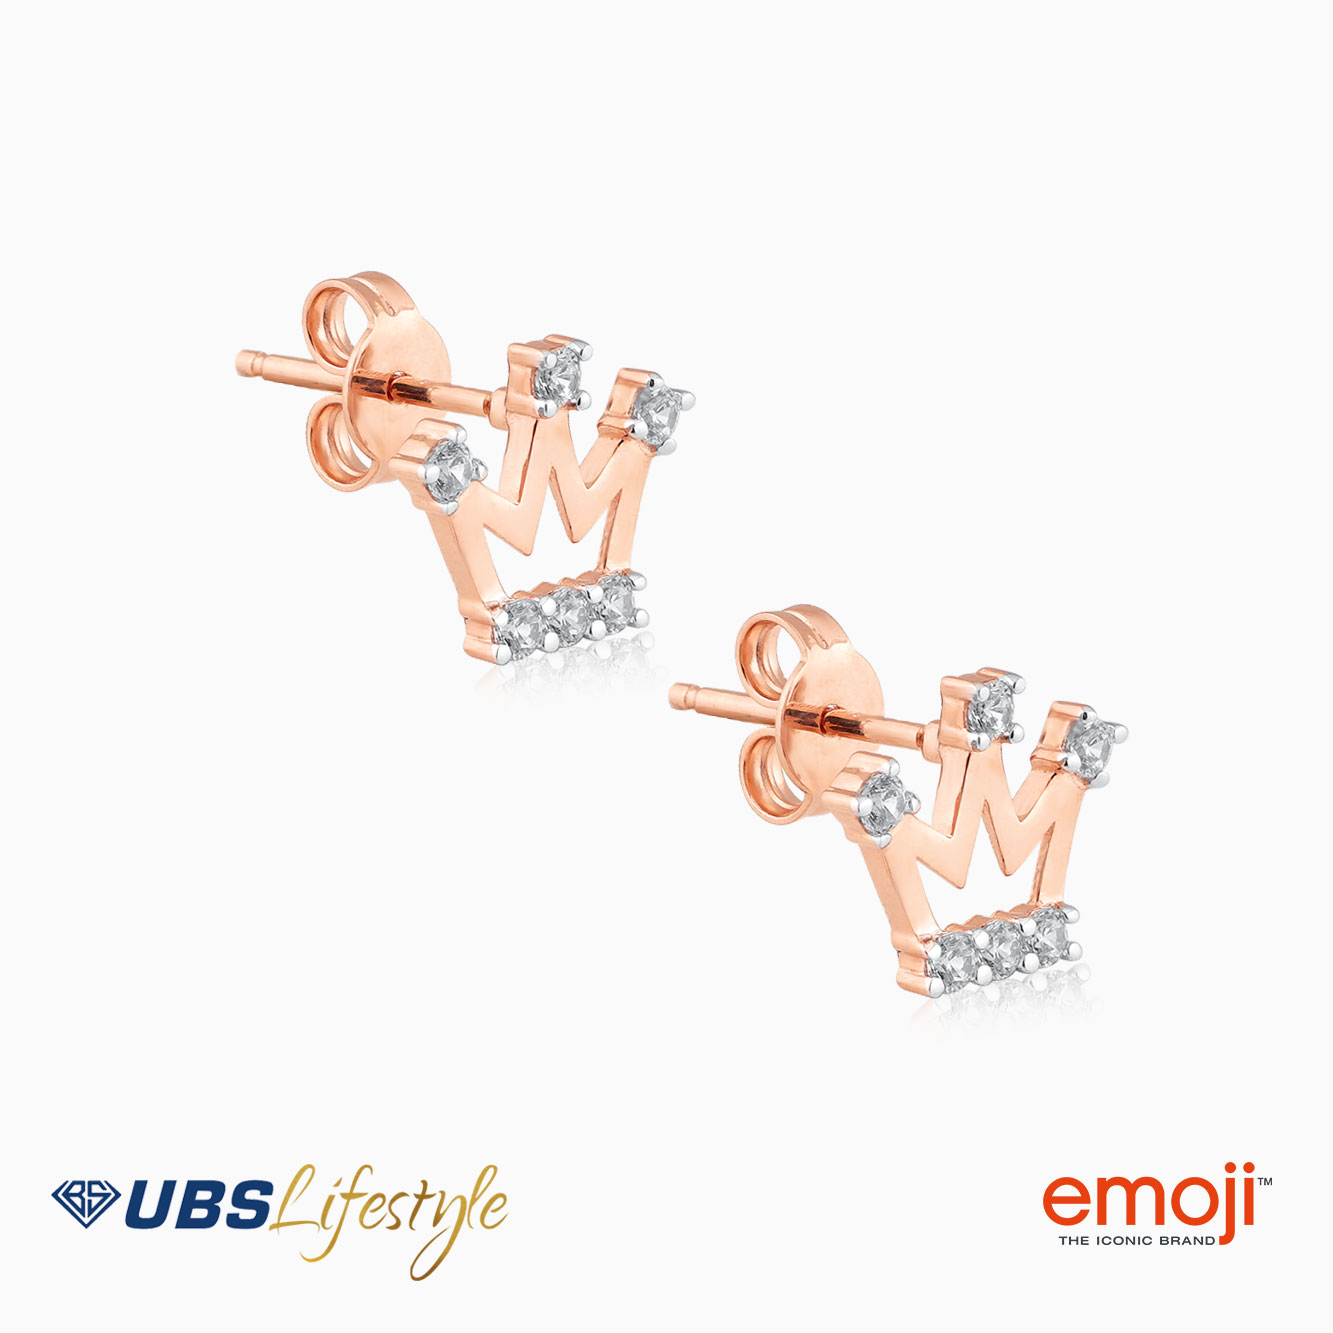 UBS Anting Emas Emoji - Cwq0002R - 17K